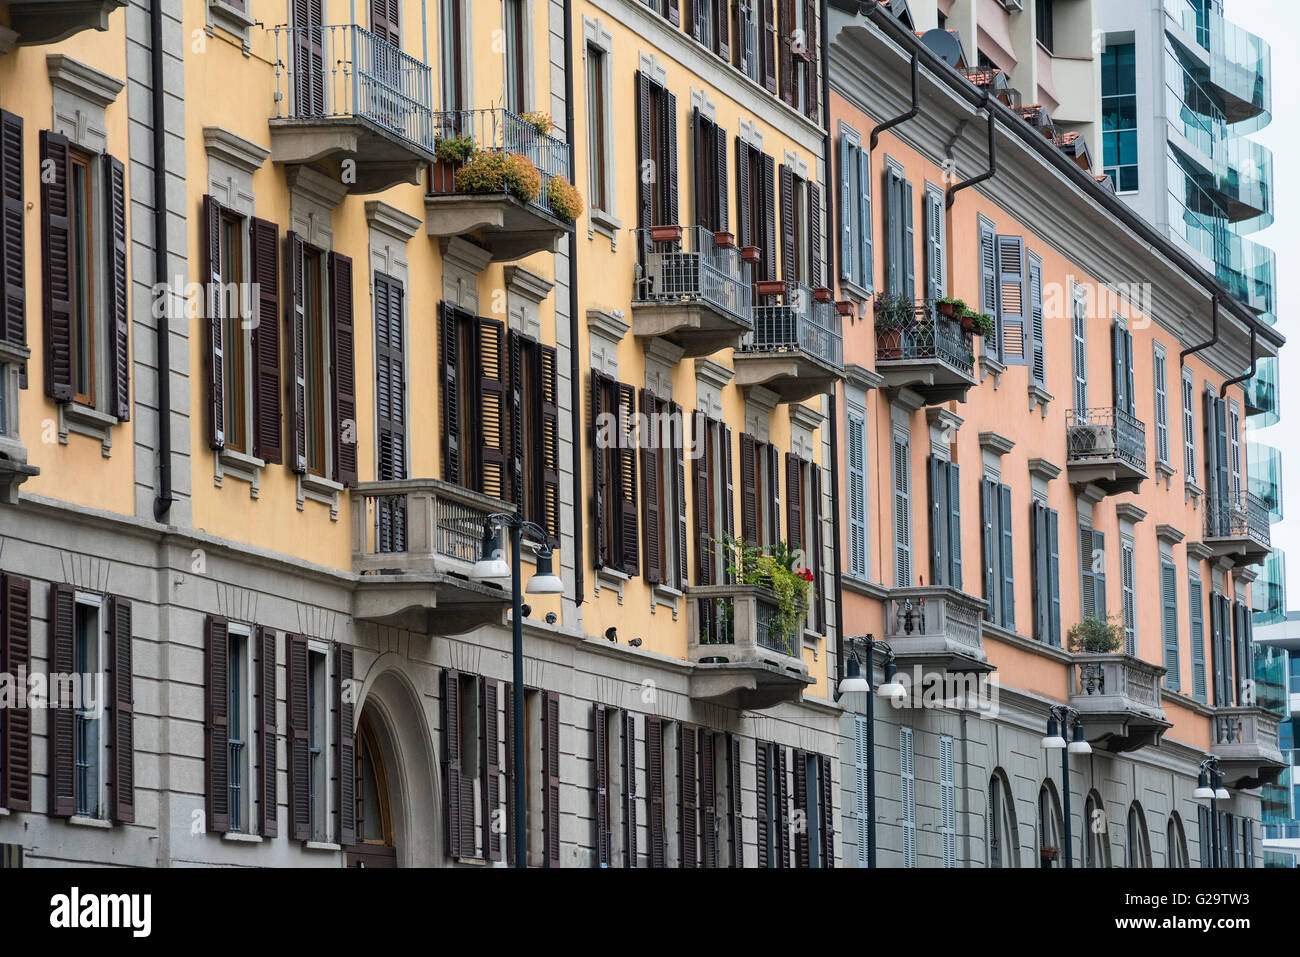 Mailand (Lombardei, Italien) - Fassade des alten Wohngebäude in Corso Como, in der Nähe der Gae Aulenti quadratisch, mit Fenstern, balconi Stockfoto